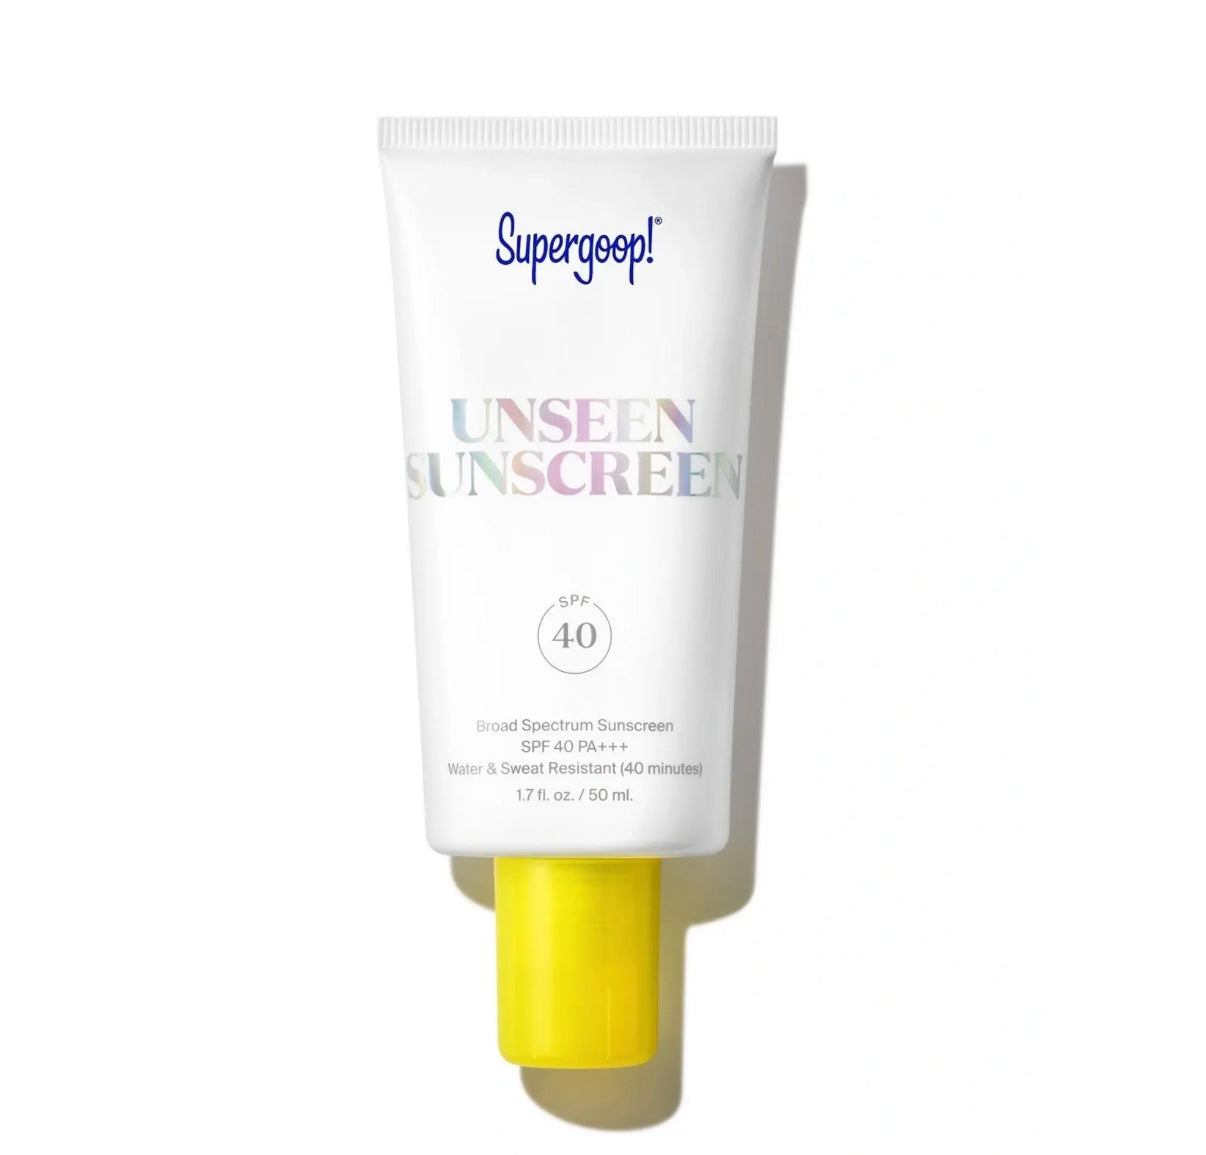 Unseen Sunscreen SPF 40 - Supergoop